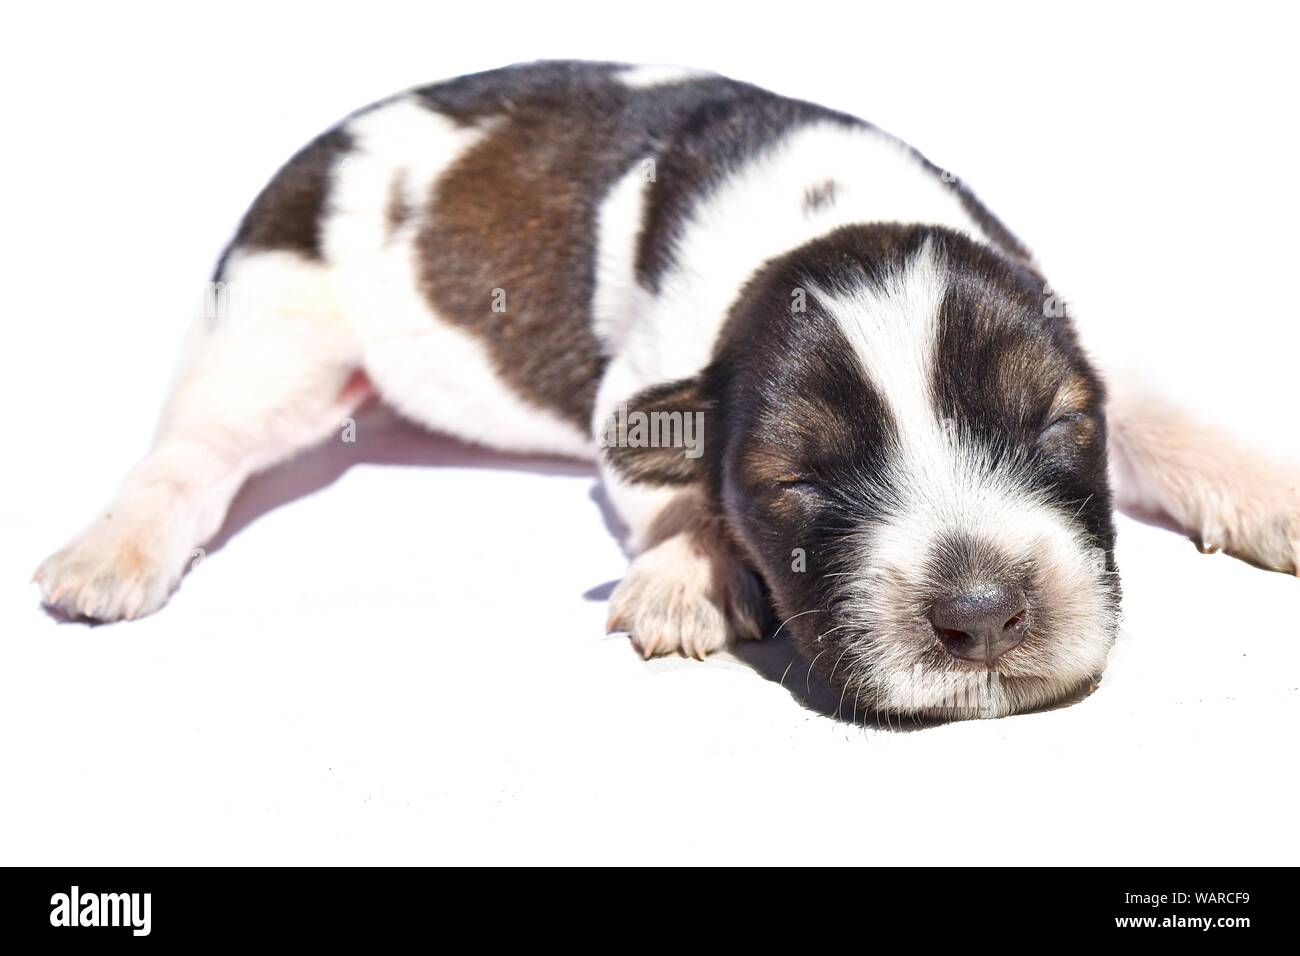 Neugeborene Spotted Dog isoliert auf weißem Hintergrund, Dunkelbraun und weiß gestreifte Welpe, Baby pet Stockfoto